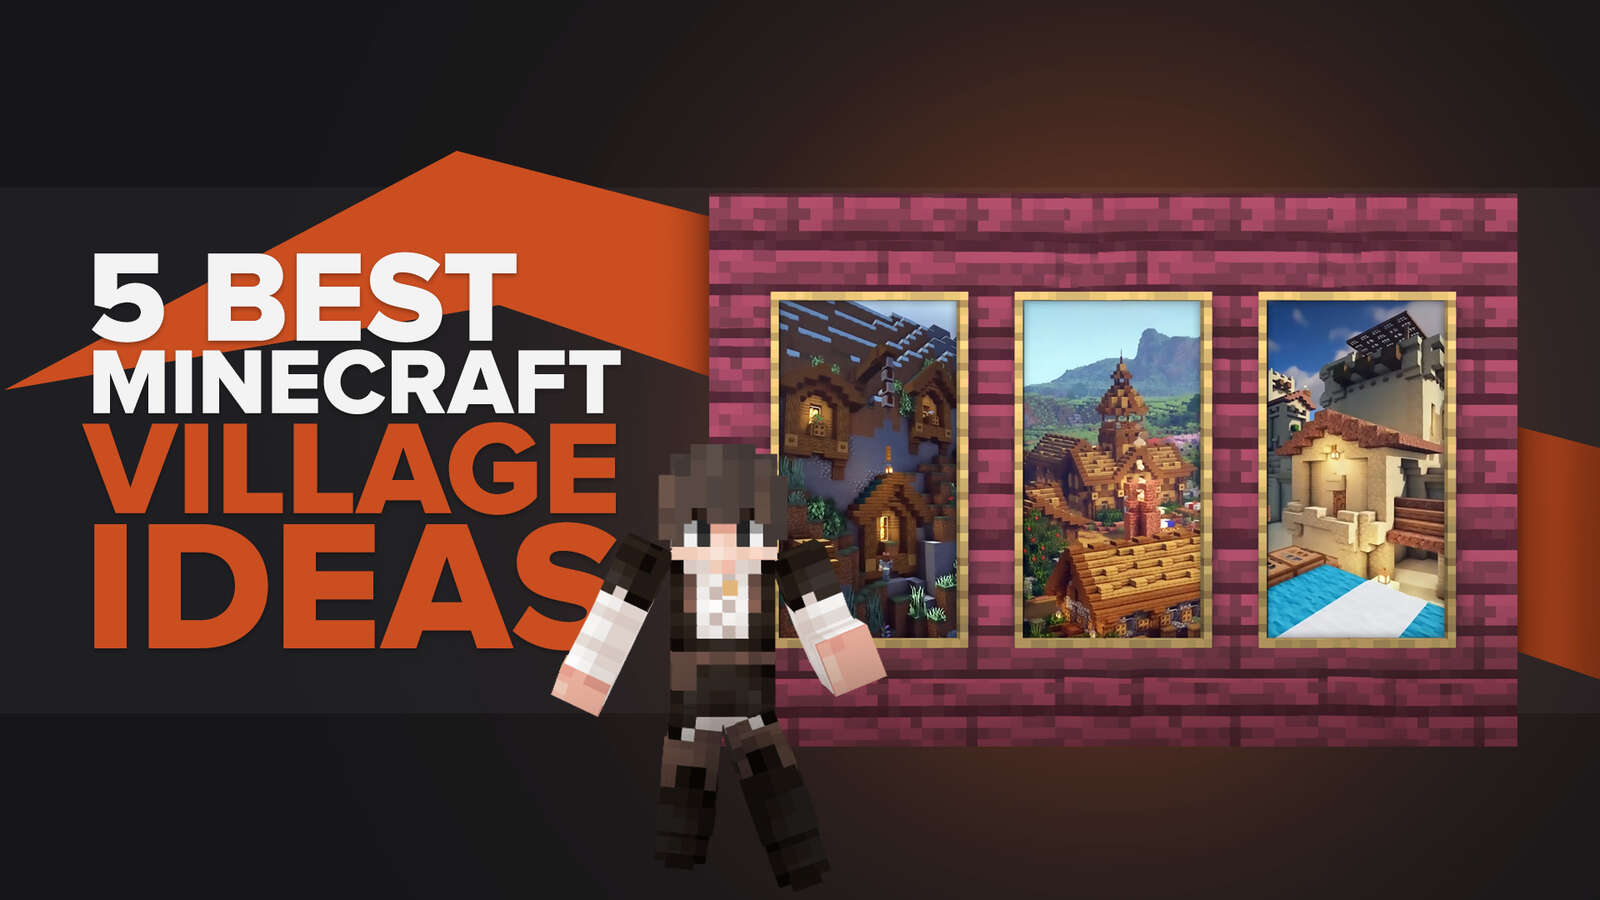 5 Best Minecraft Village Ideas